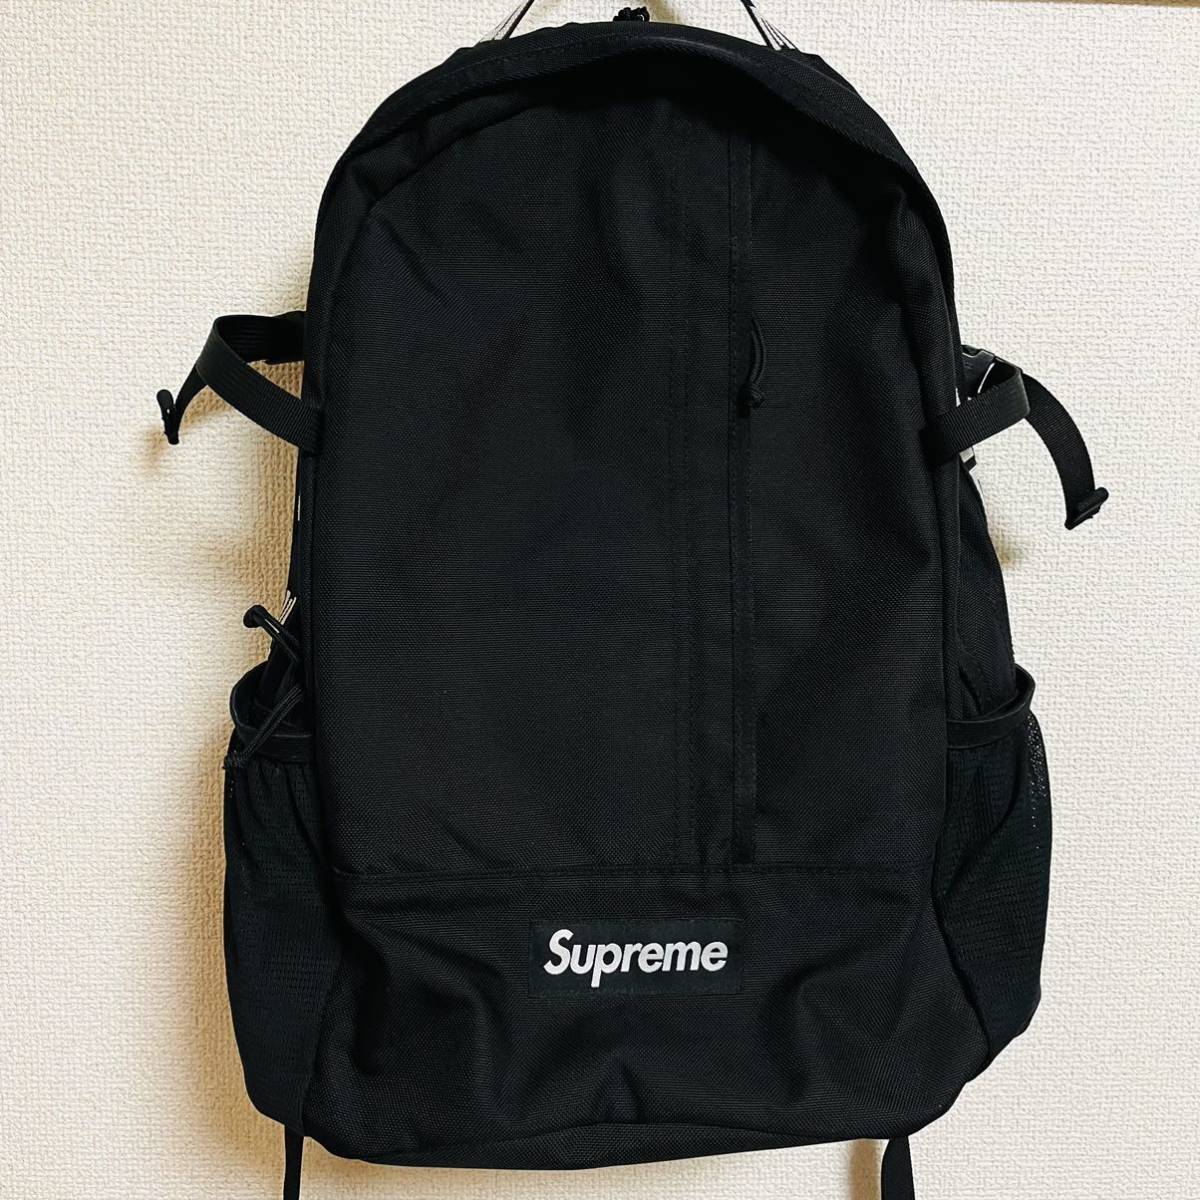 ヤフオク! -「supreme 18ss backpack」の落札相場・落札価格